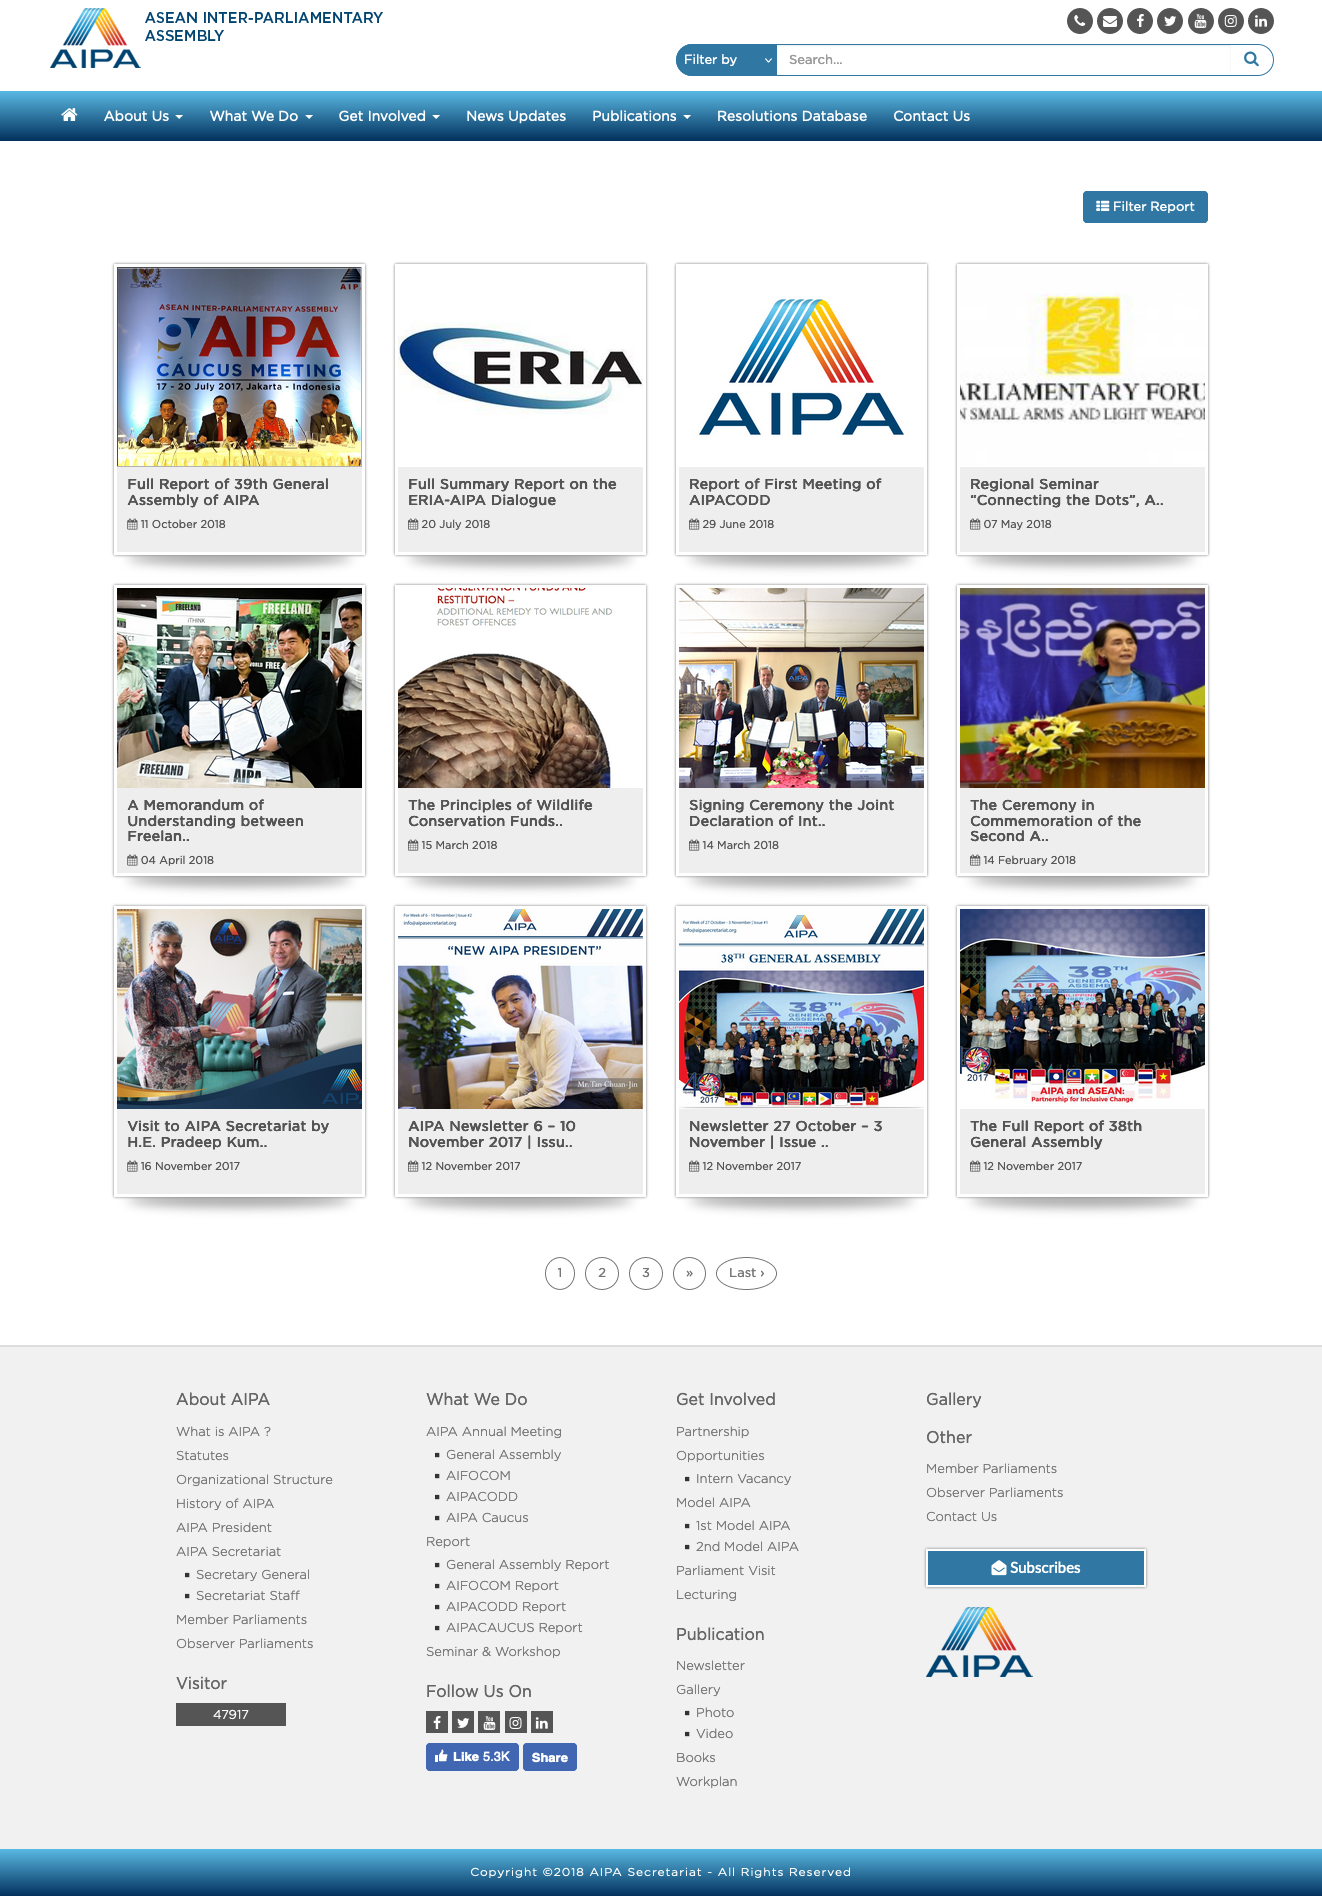 Website Organisasi - ASEAN Inter-Parliamentary Assembly (AIPA) - News - Berita - Codenesia - Code Smart Play Hard